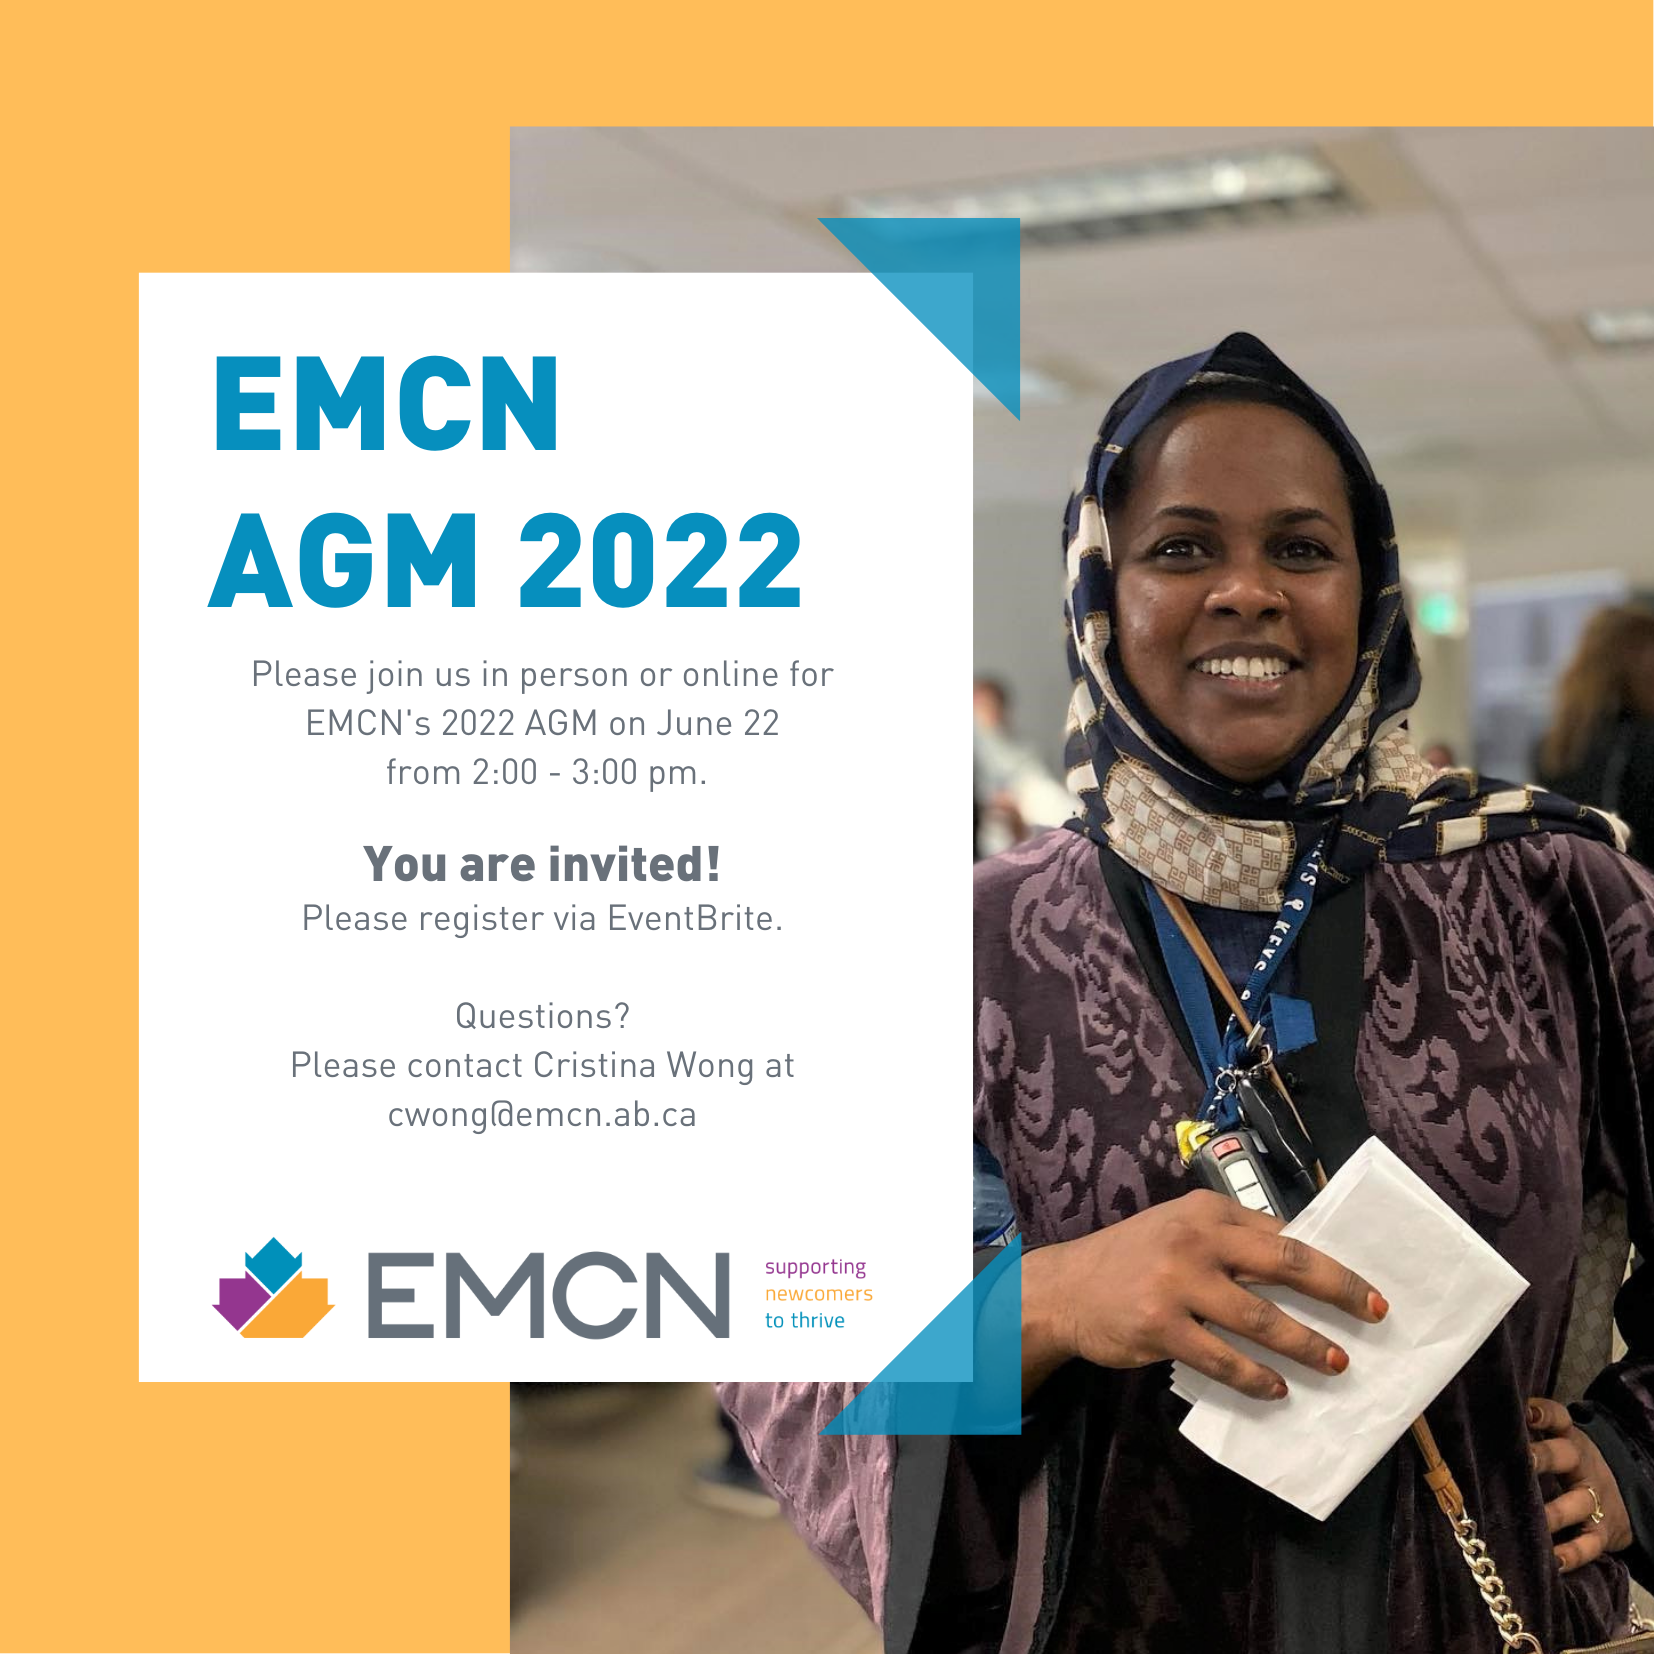 EMCN AGM 2022